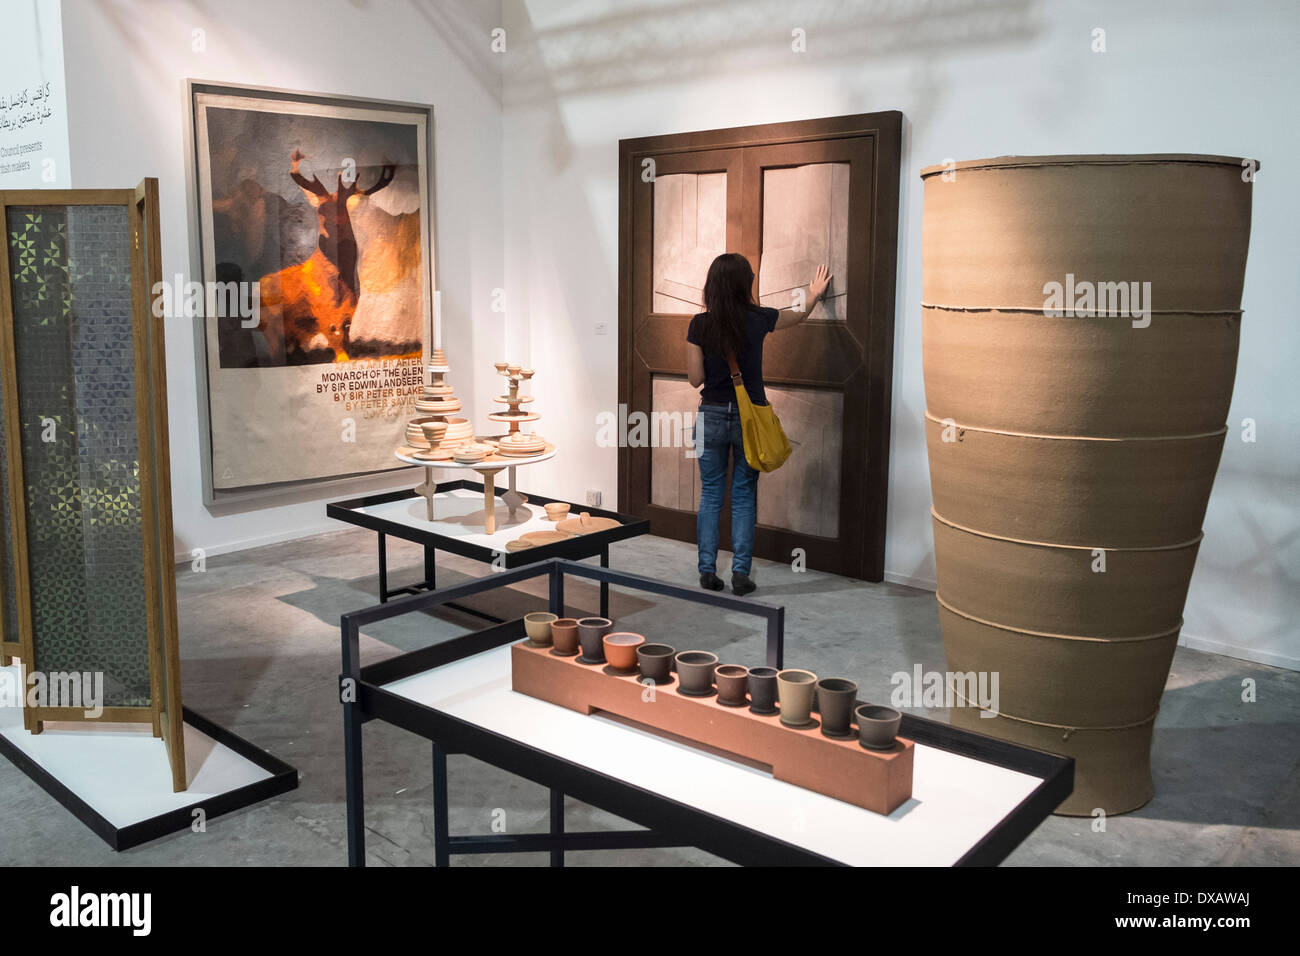 Consejo de artesanía británica exhibición en días de diseño en Dubai feria internacional anual del mobiliario y el diseño interior justo Foto de stock